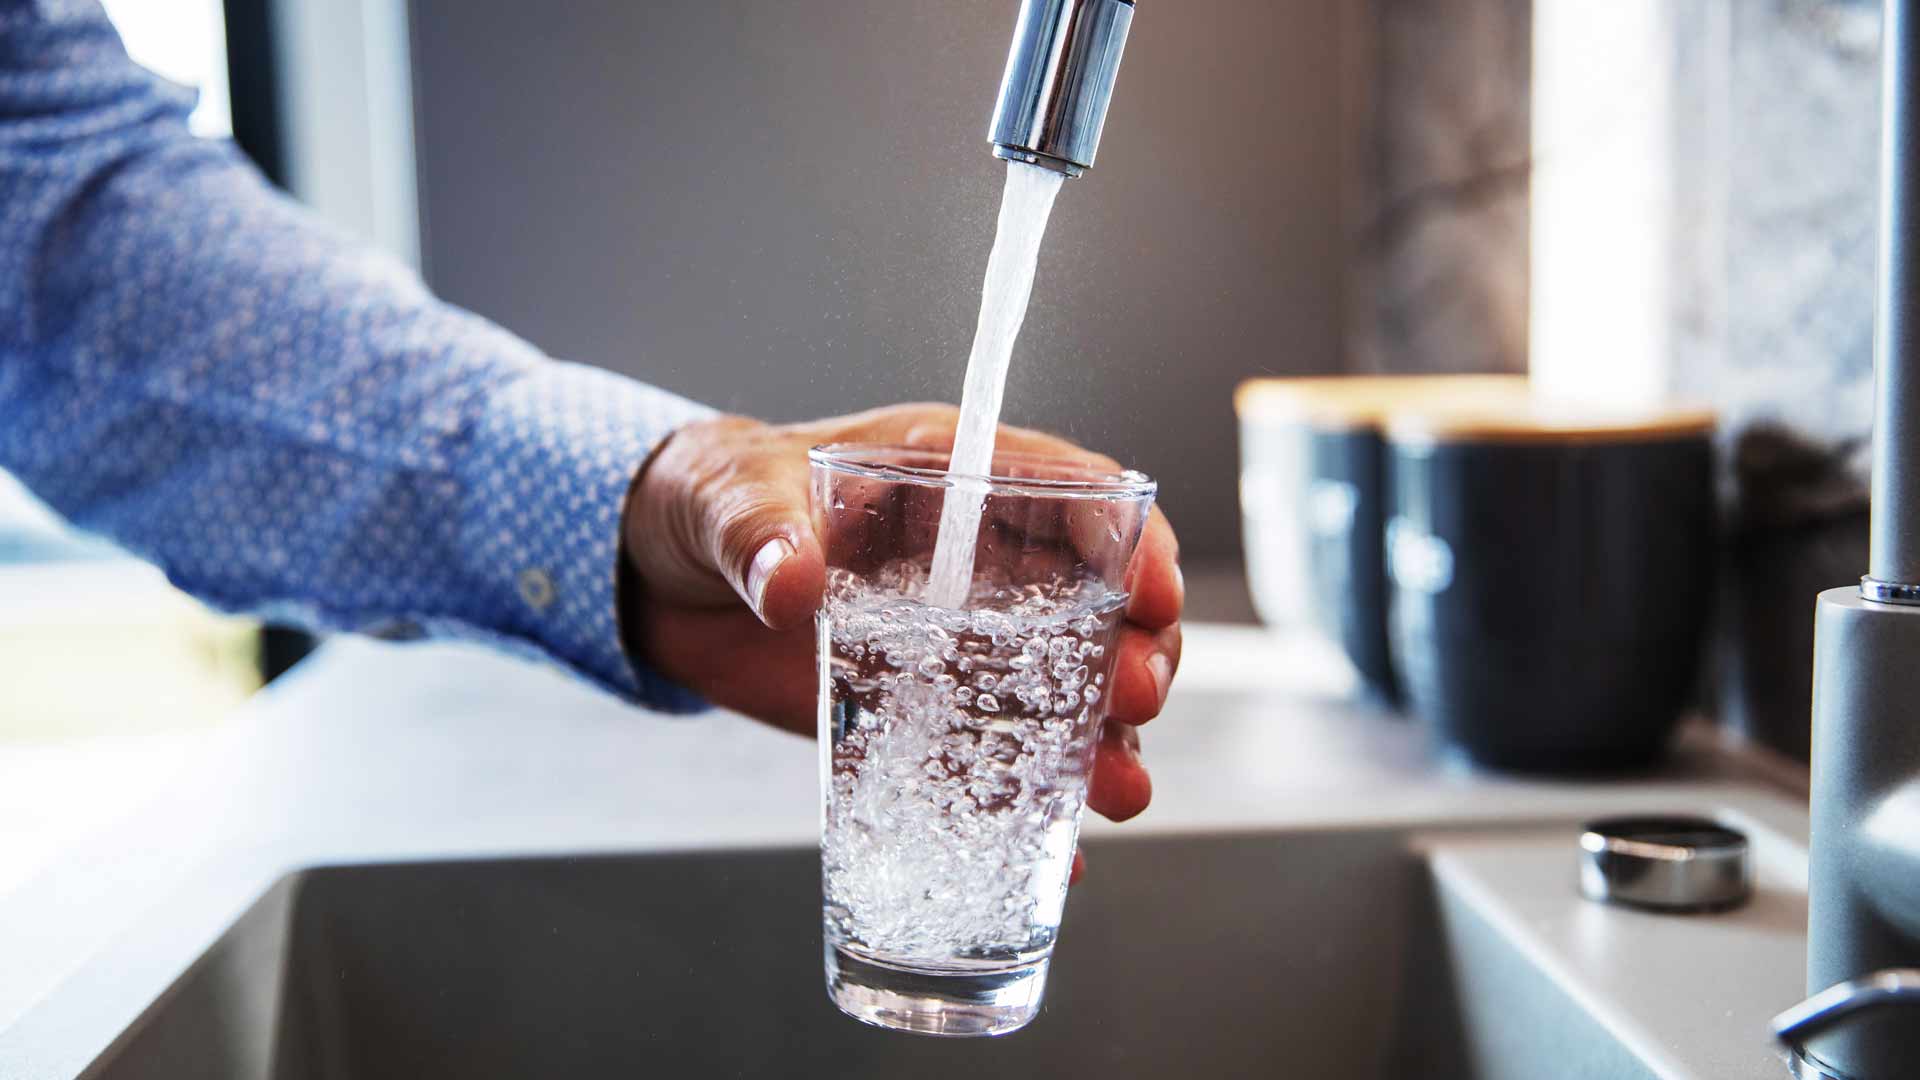 Wasser aus dem Wasserhahn fließt in ein Glas.